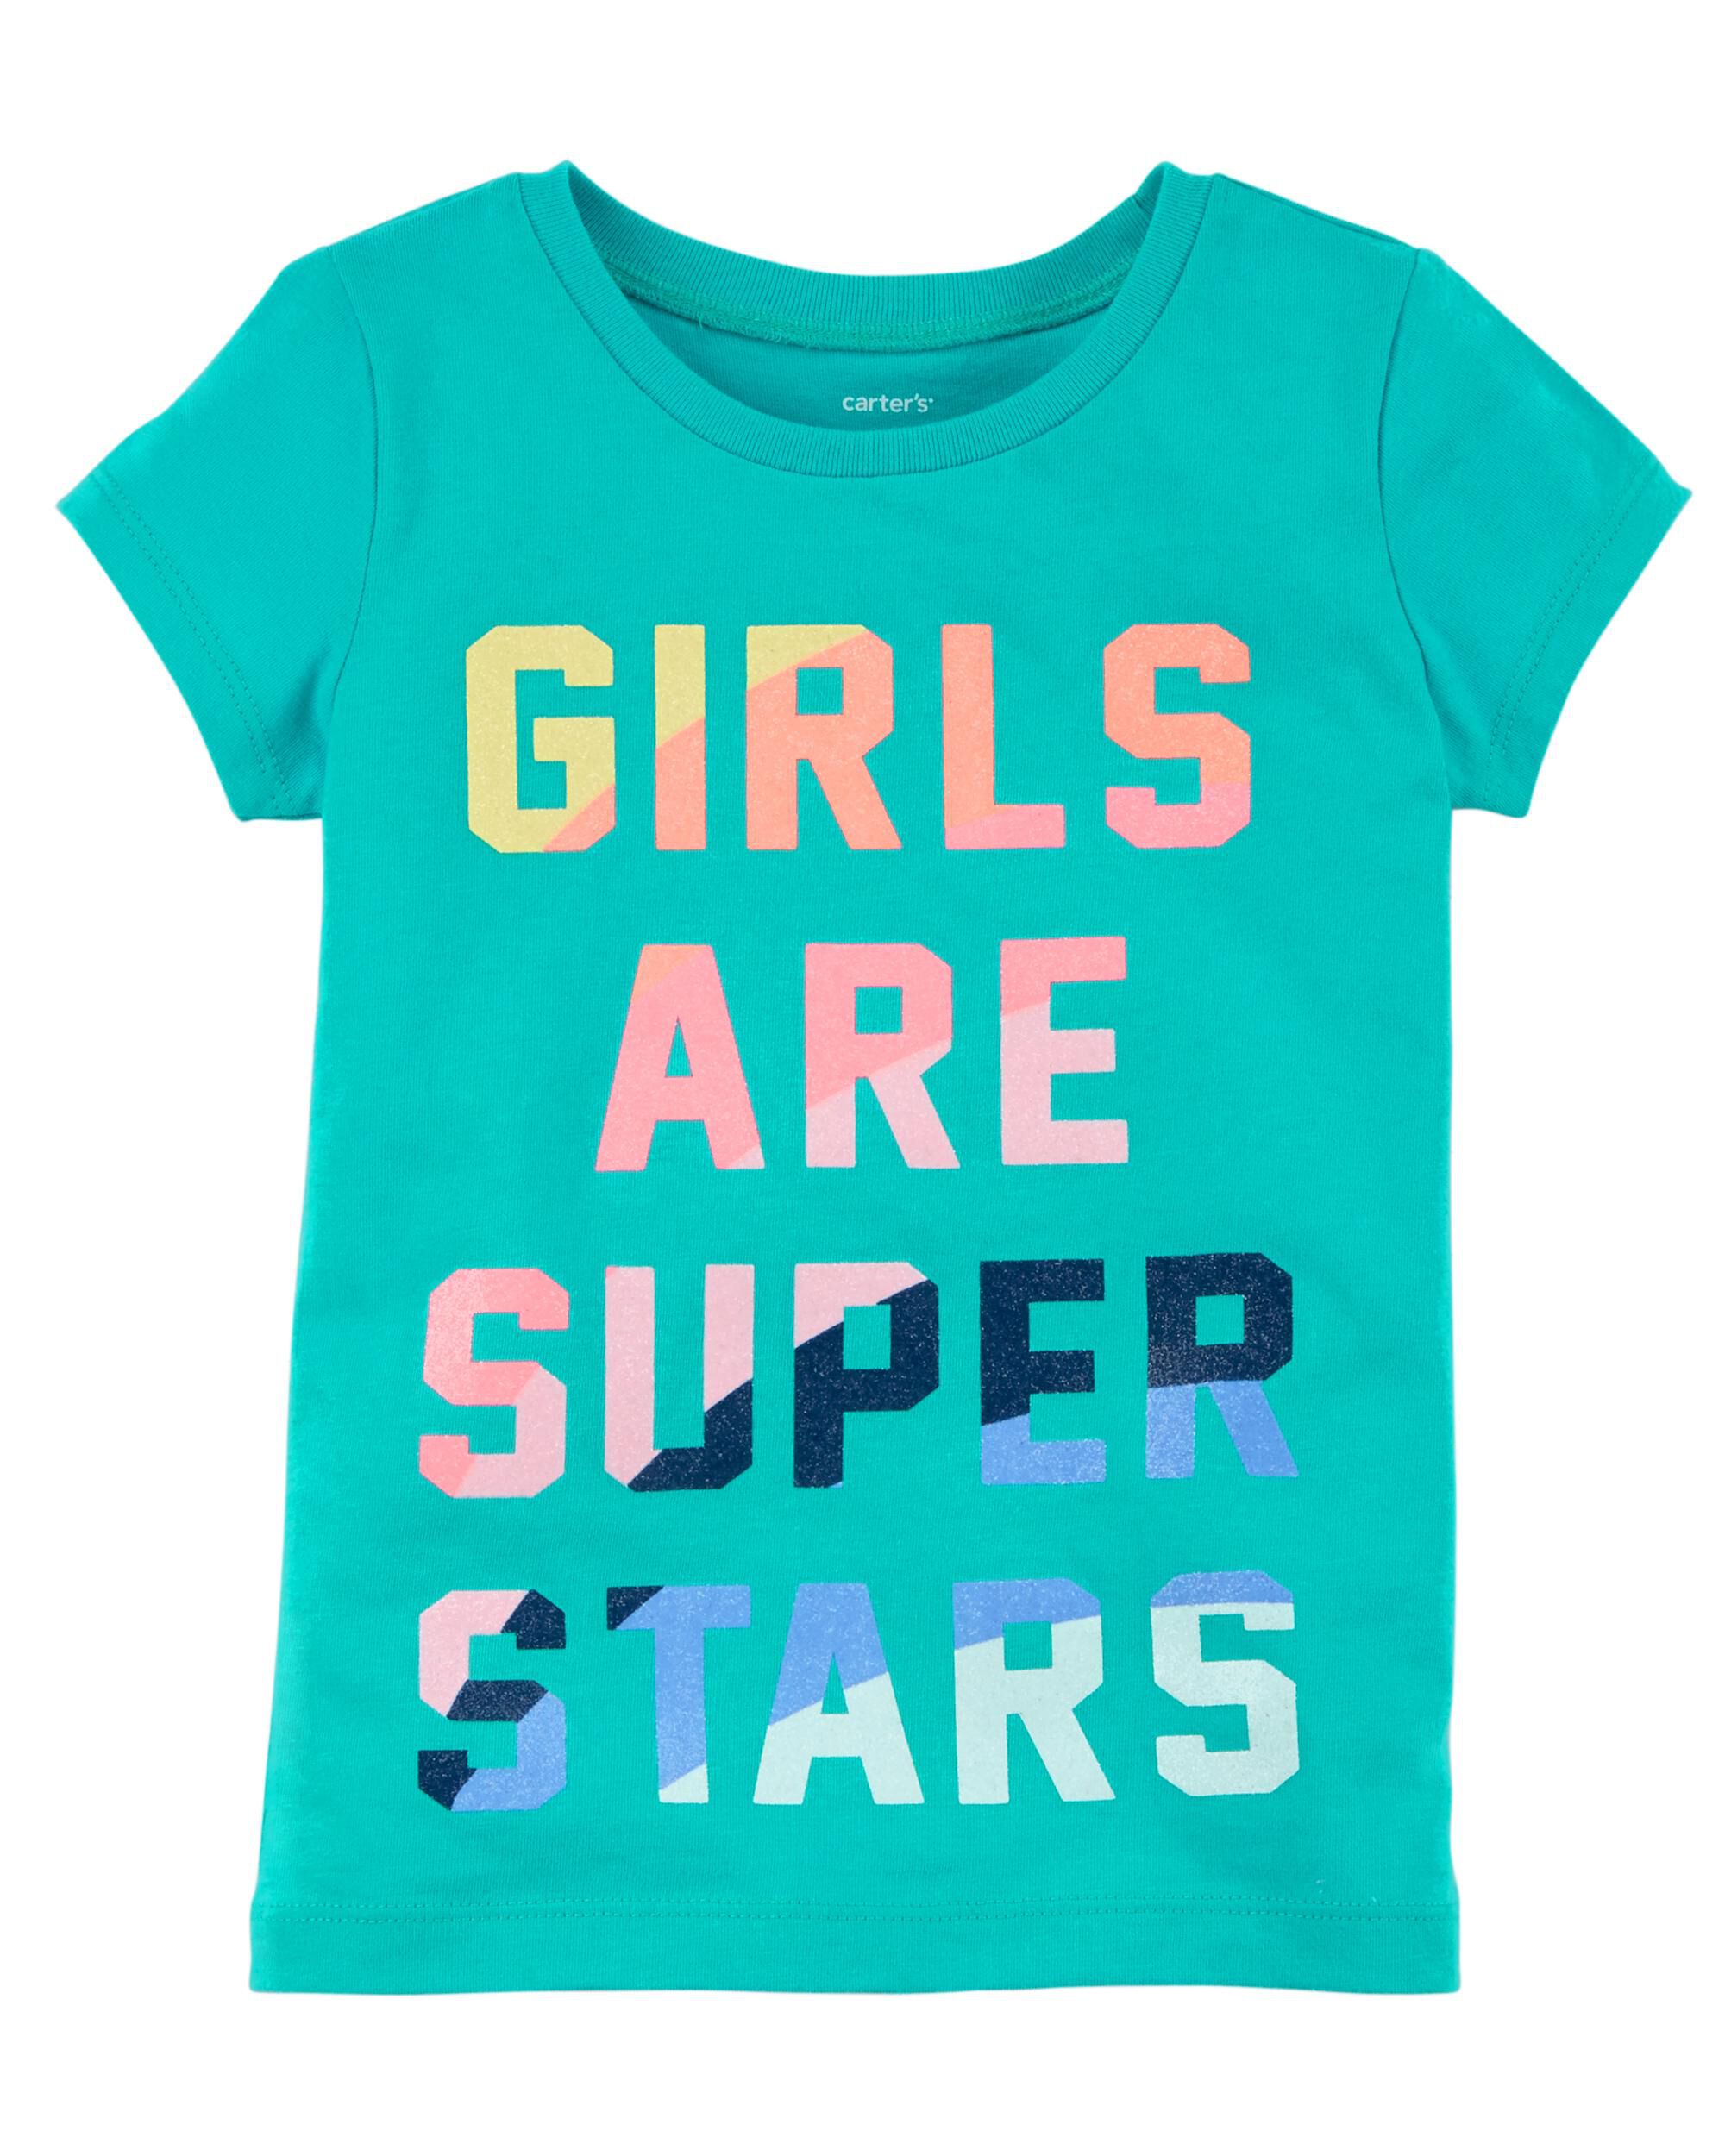 super stars girls